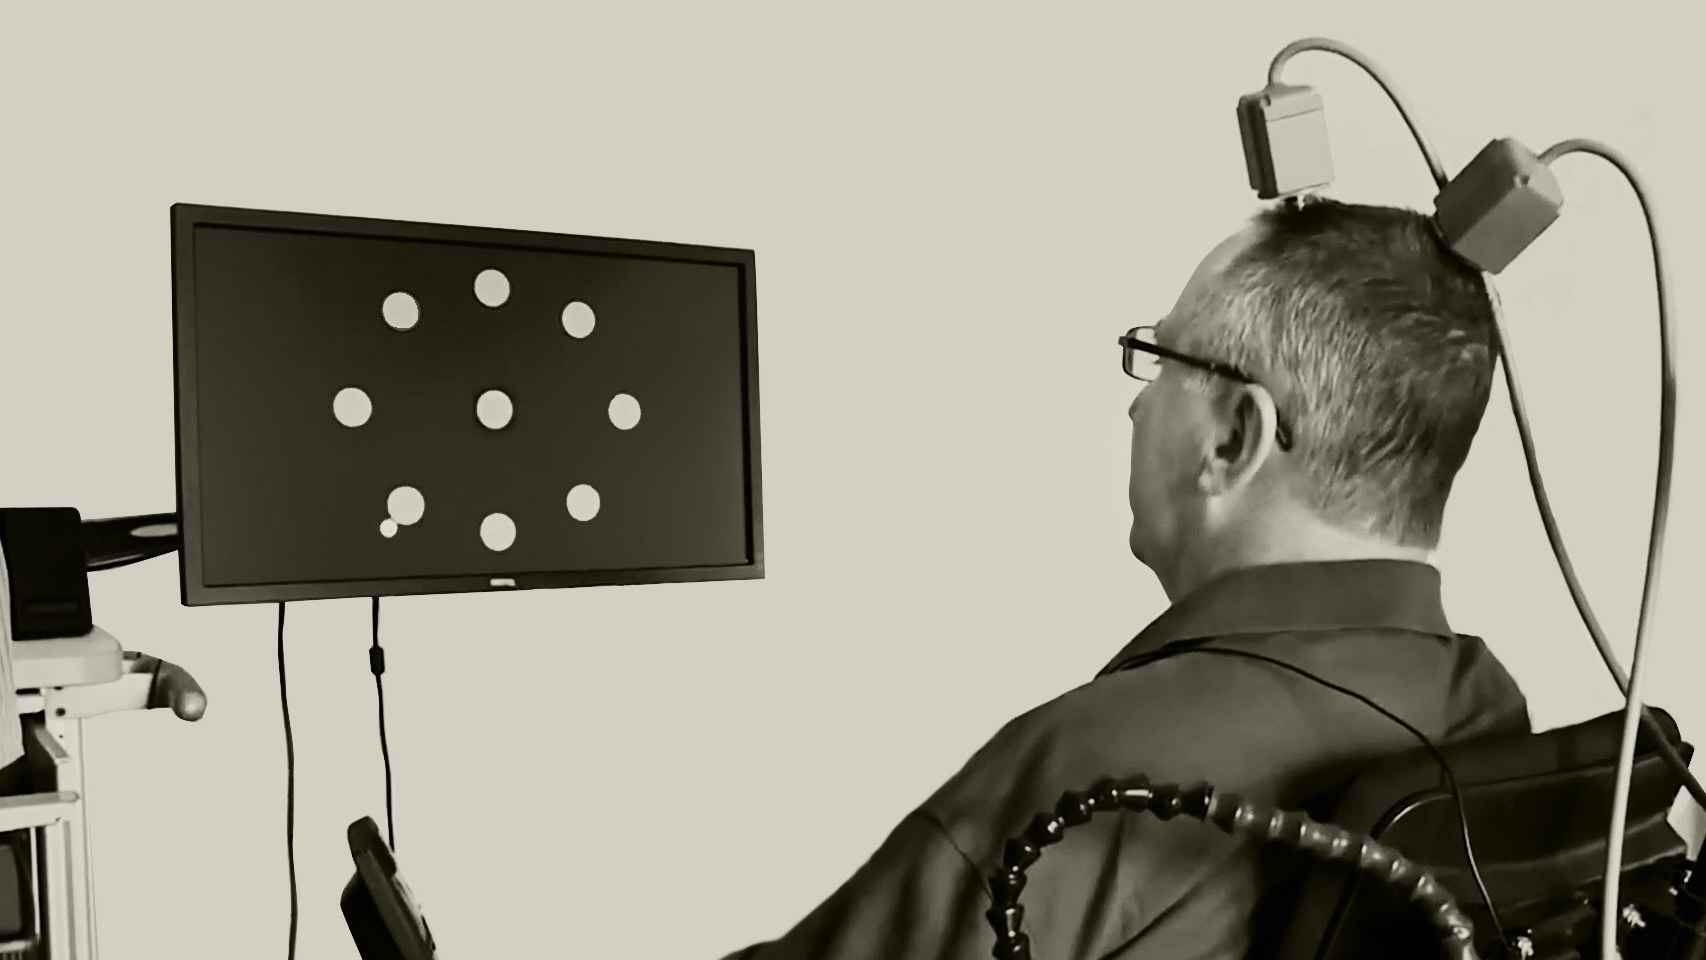 Un paciente conectado a implantes neurológicos practica el control de un sensor. Neuroscience Stanford.